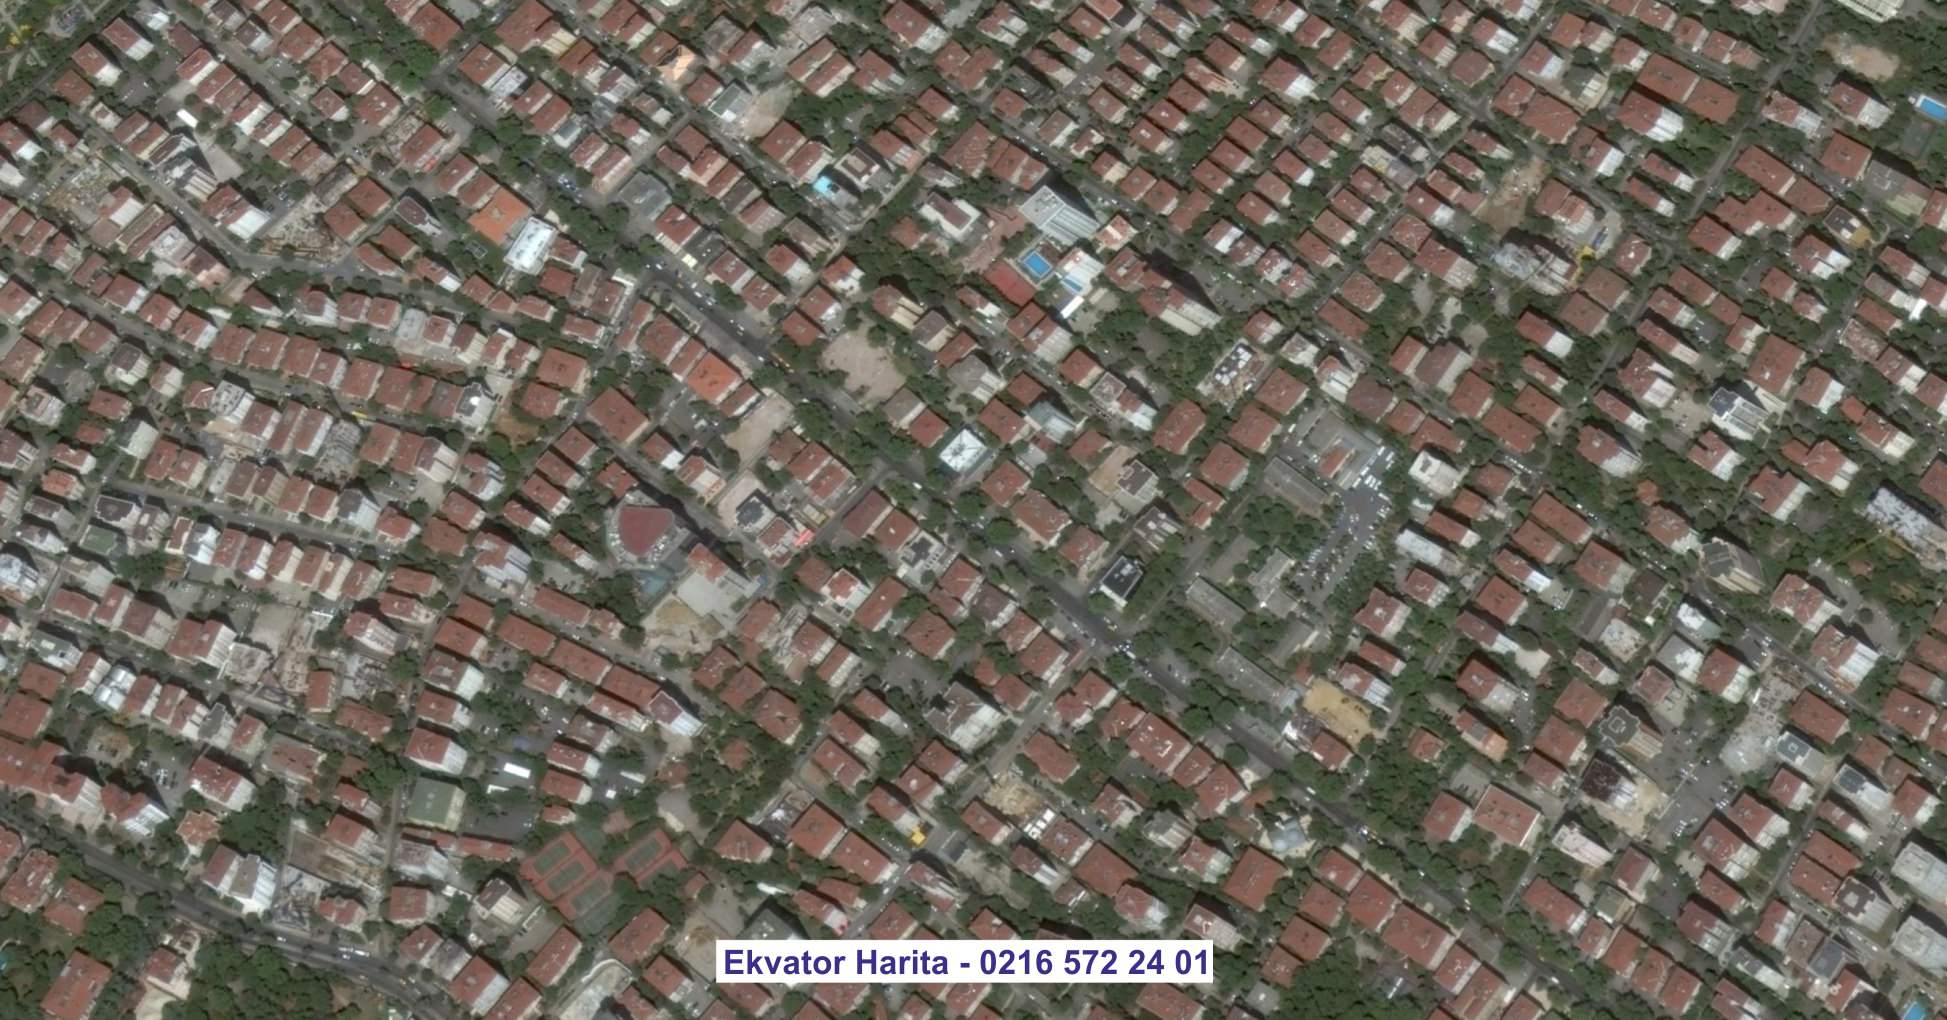 Artvin Uydu Görüntüsü Örnek Fotoğrafı